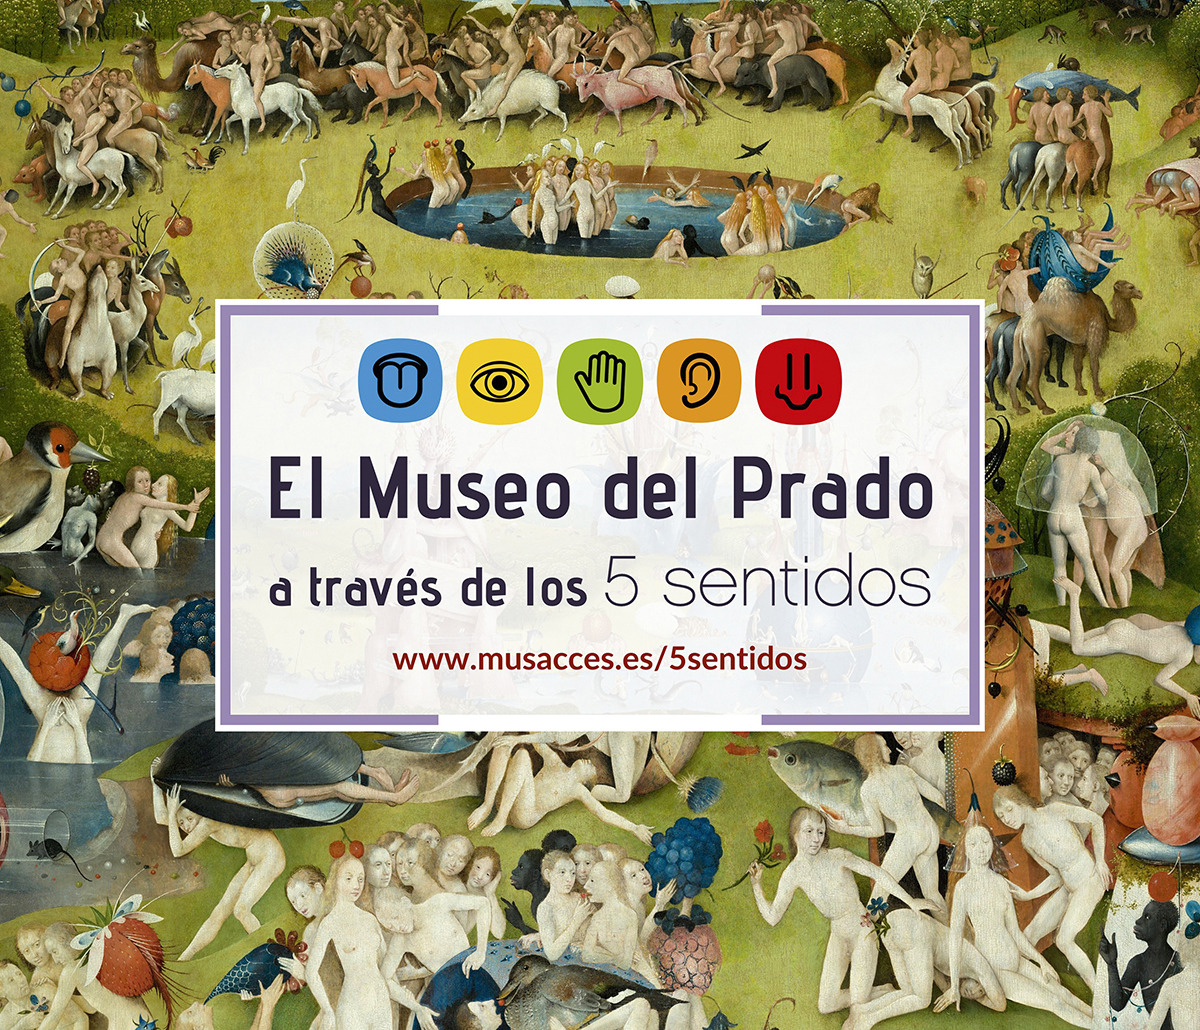 El Consorcio MUSACCES organiza un seminario para experimentar algunas obras del Museo del Prado desde los cinco sentidos